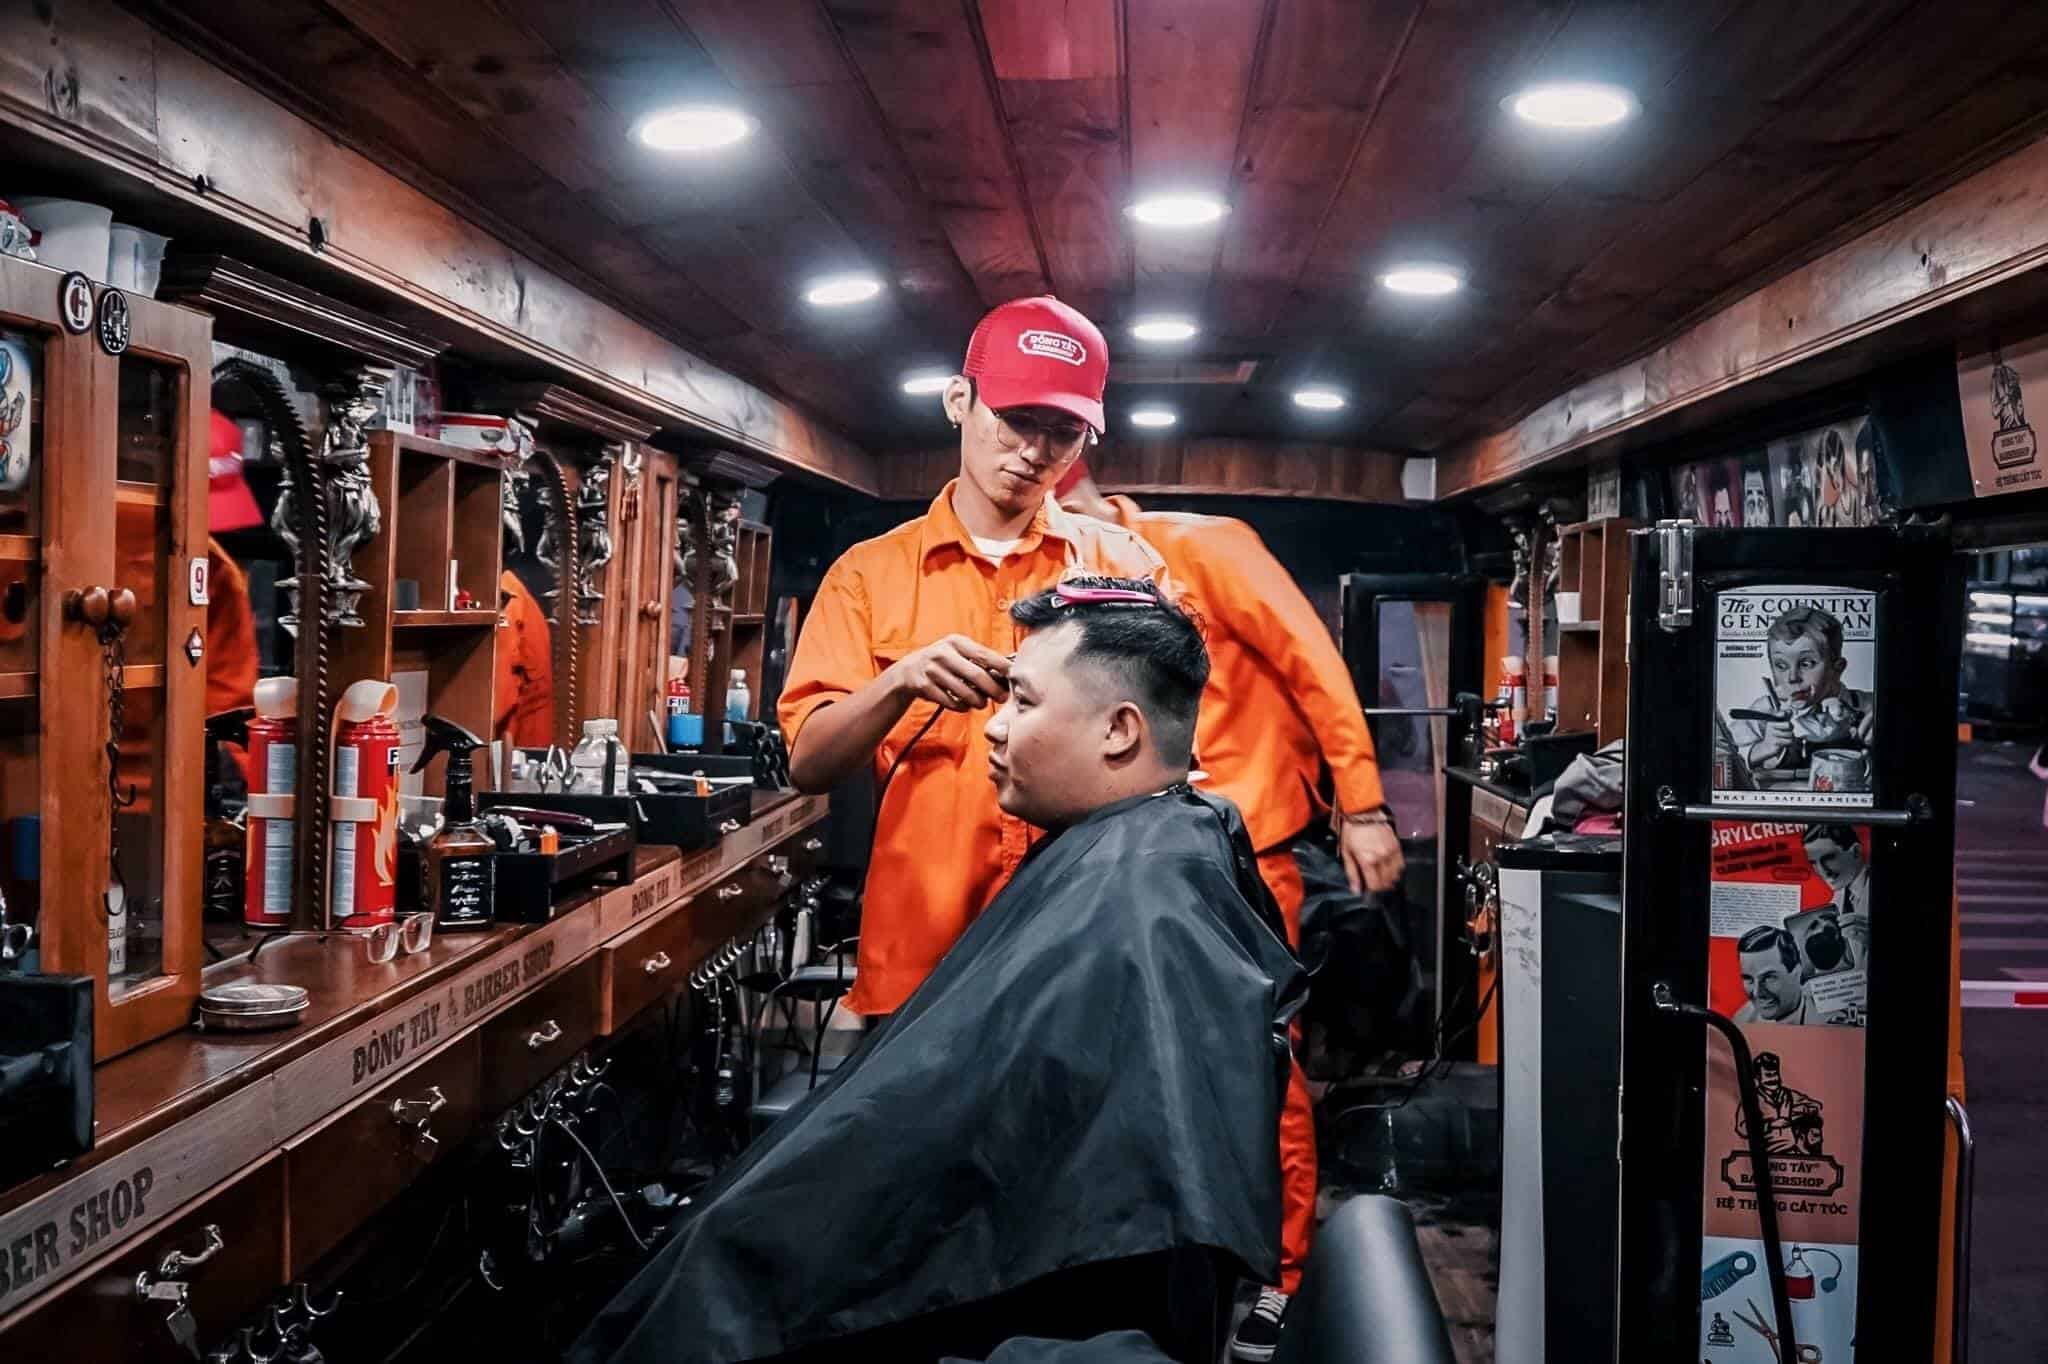 mở barber shop cần chuẩn bị gì